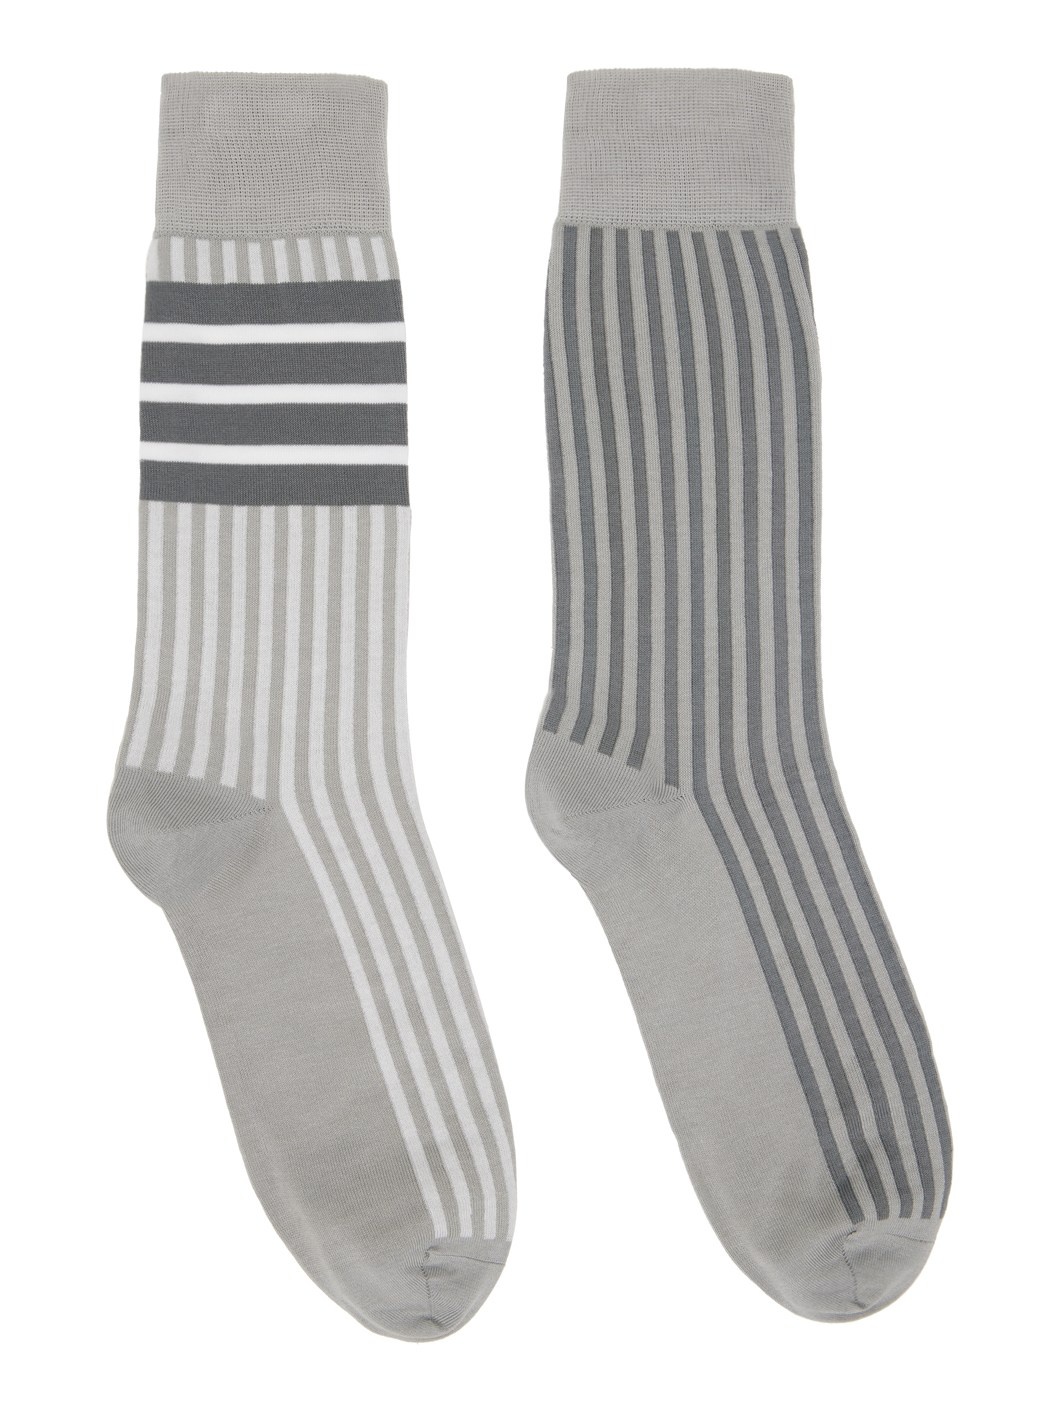 Gray Fun Mix Seersucker Jacquard Socks - 1